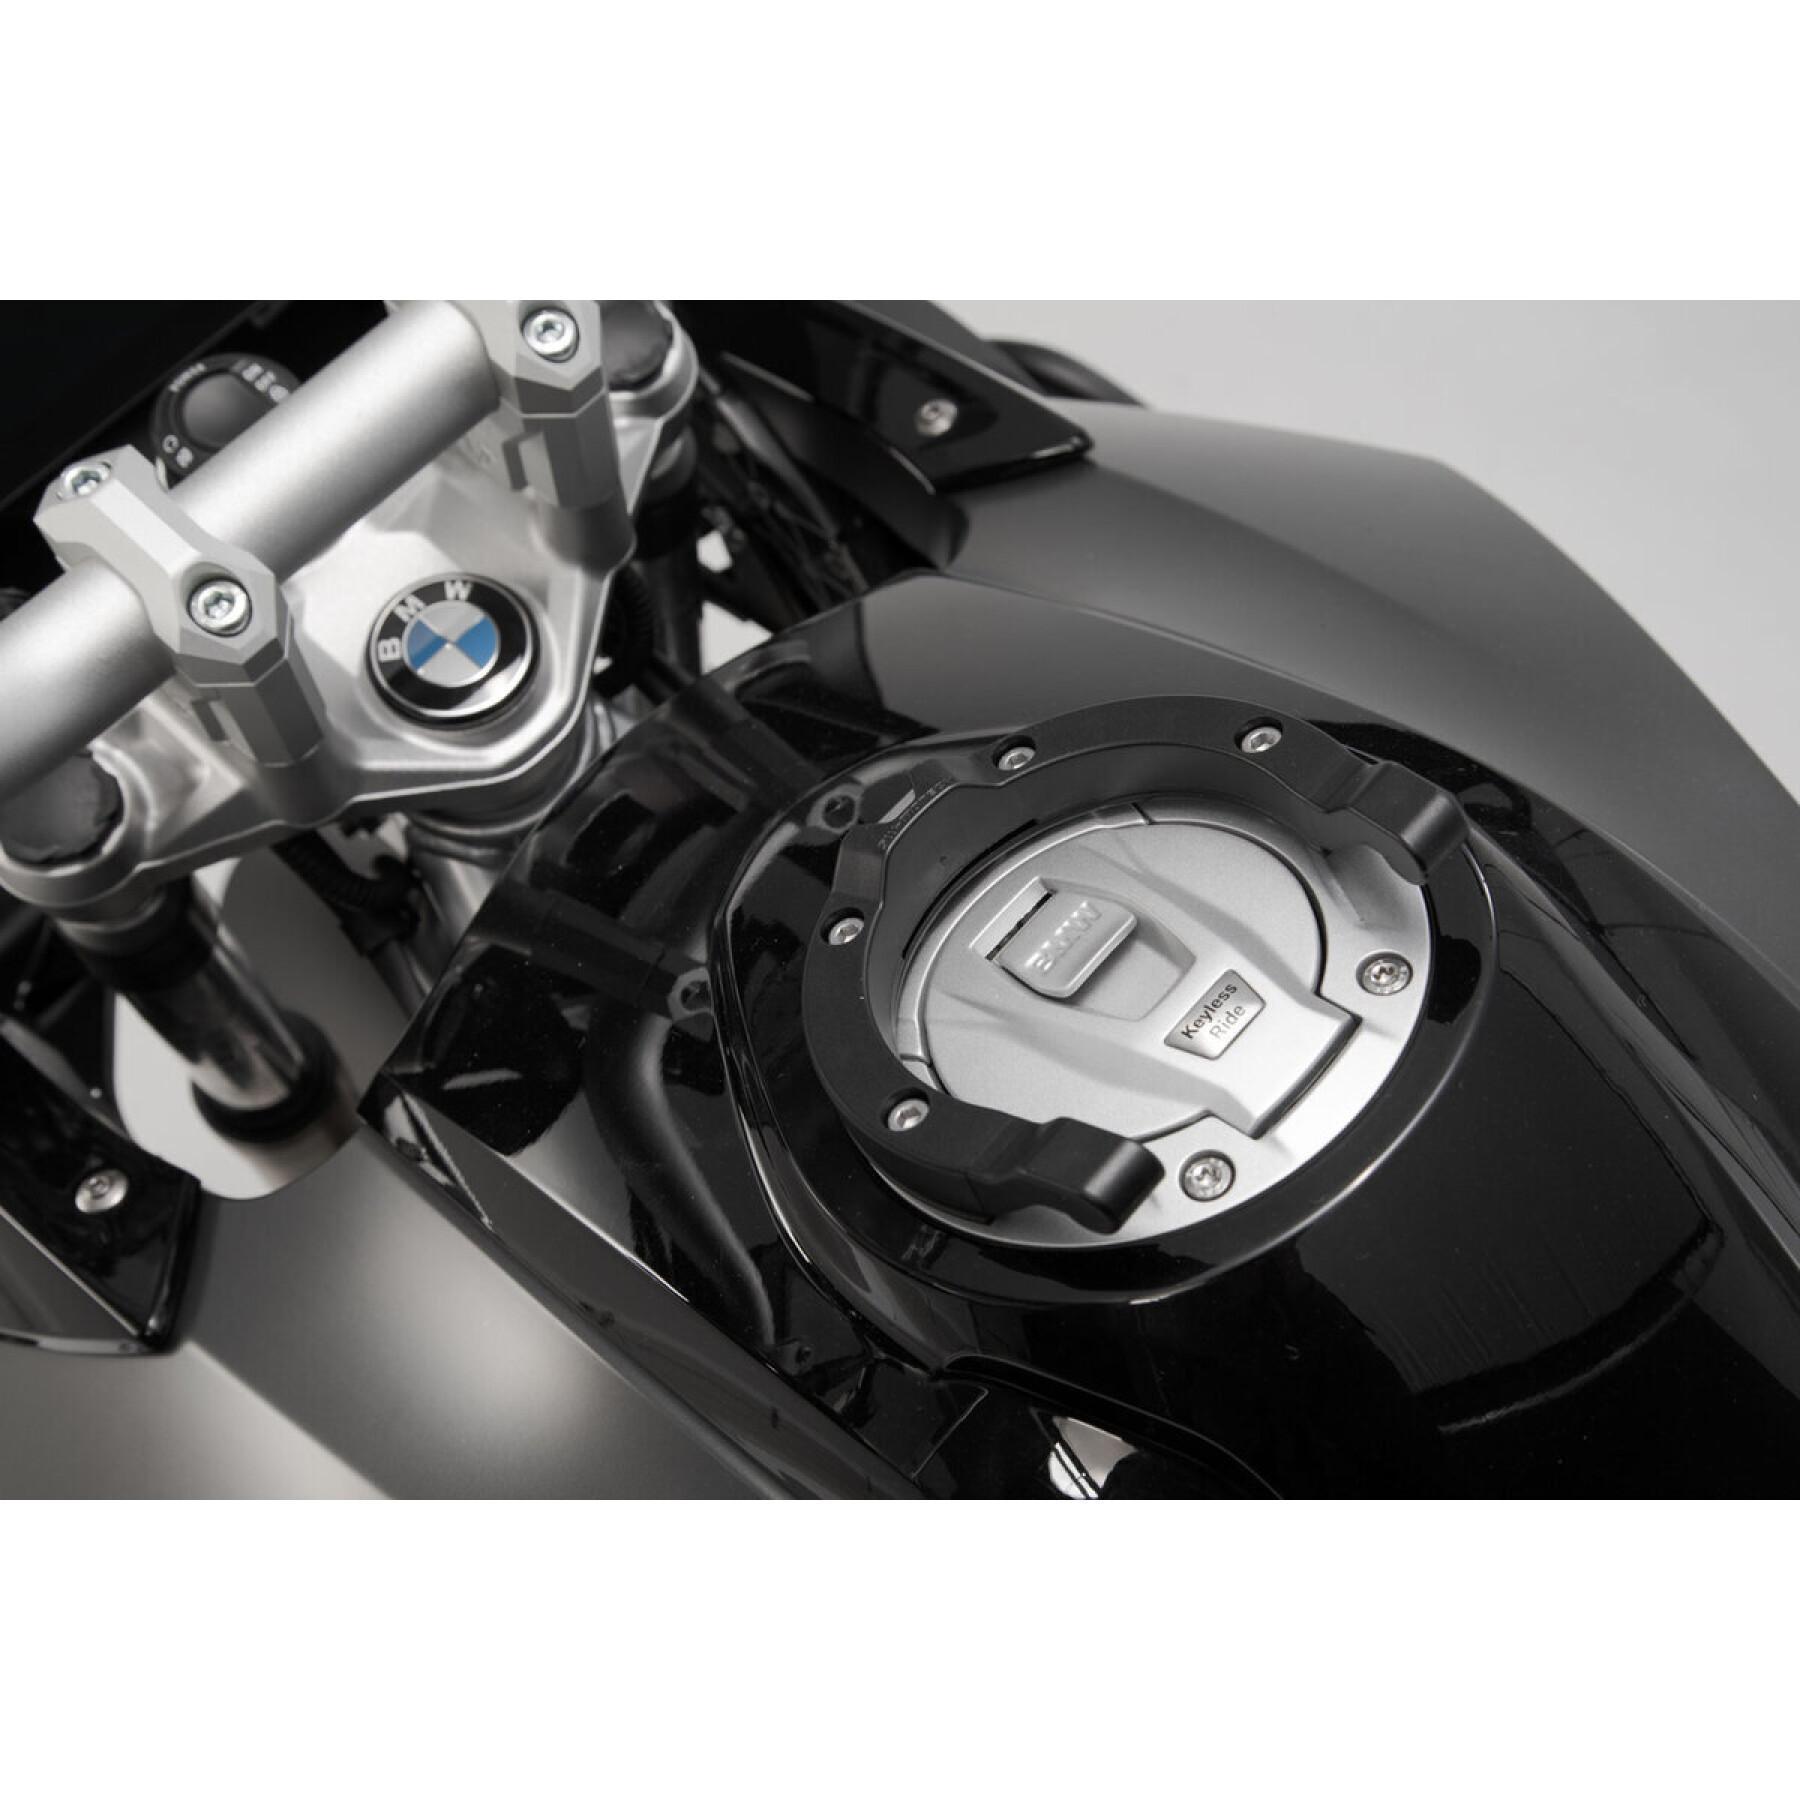 Anillo del depósito SW-Motech Ion BMW / Ducati / KTM / Triumph